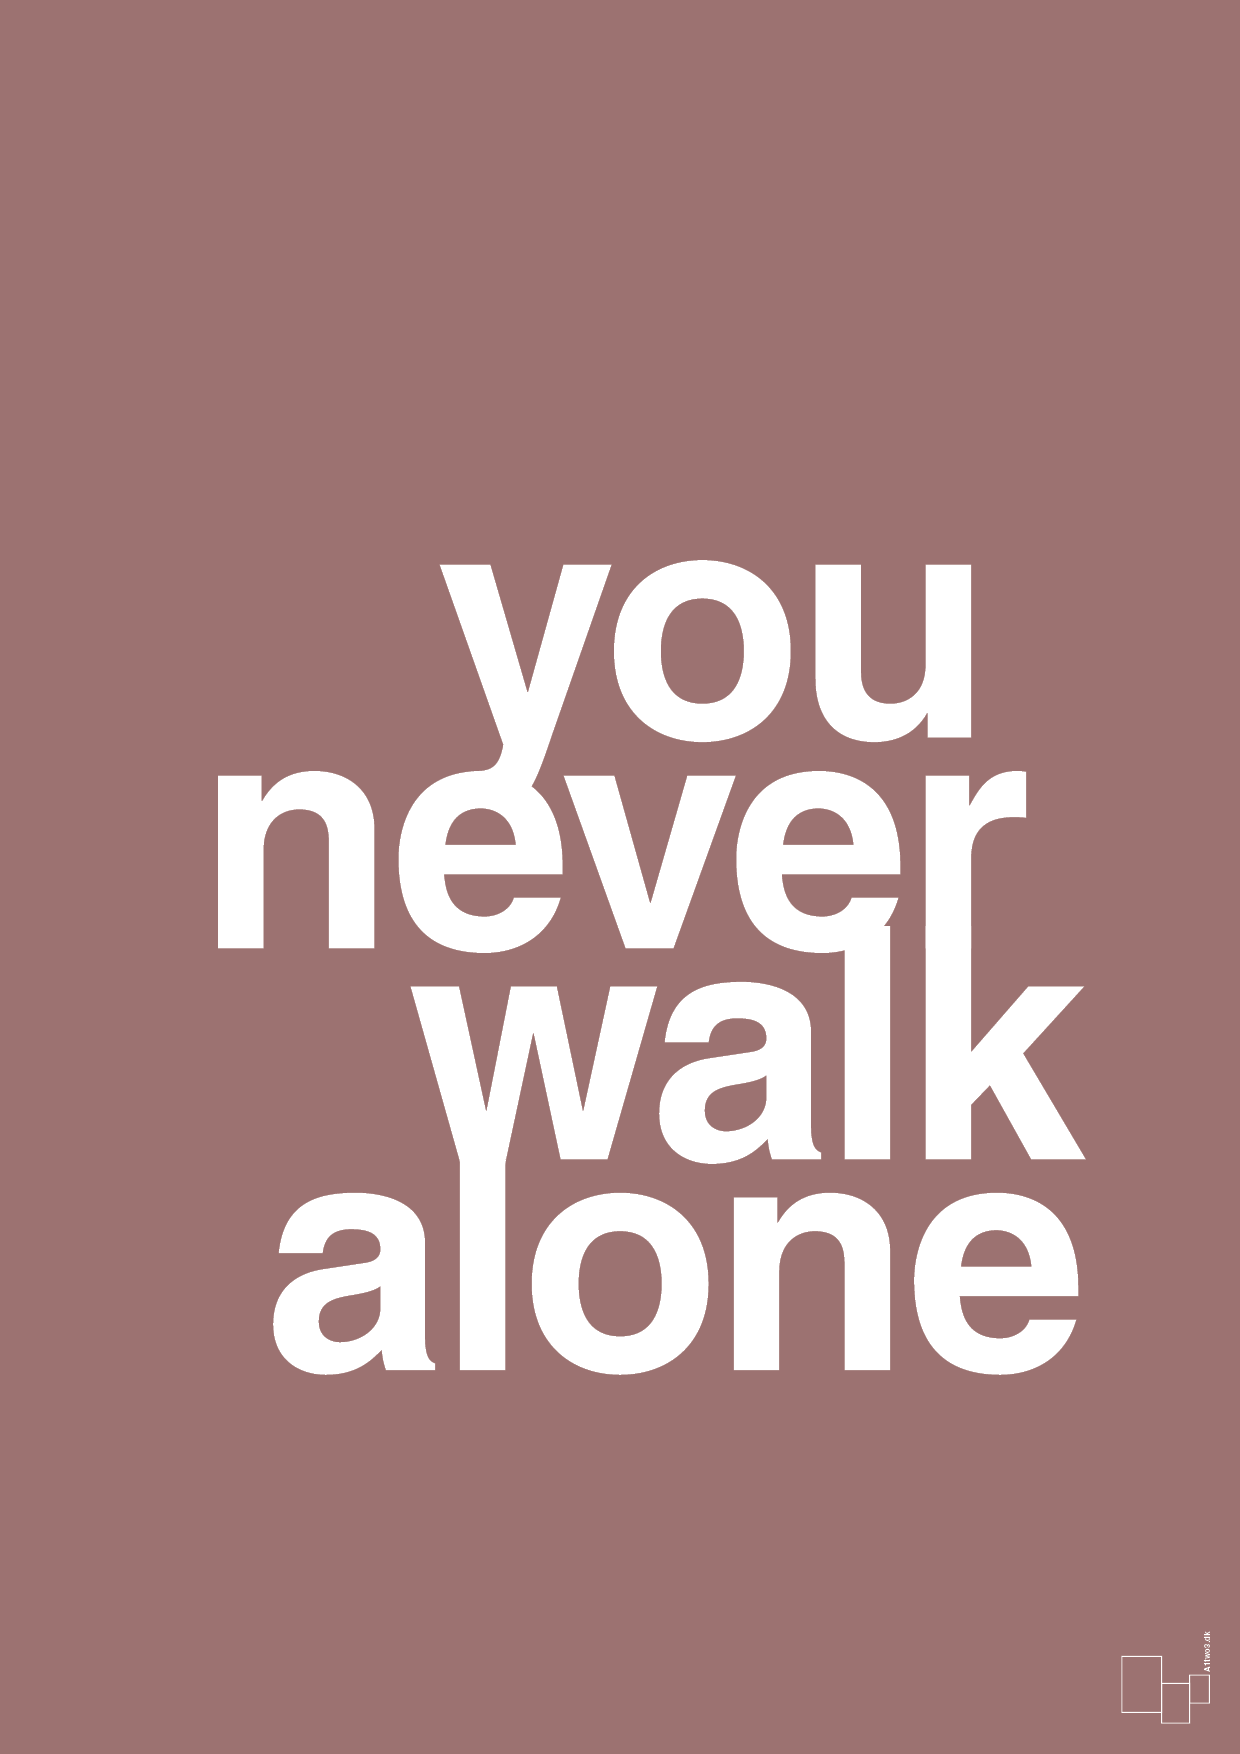 you never walk alone - Plakat med Ordsprog i Plum